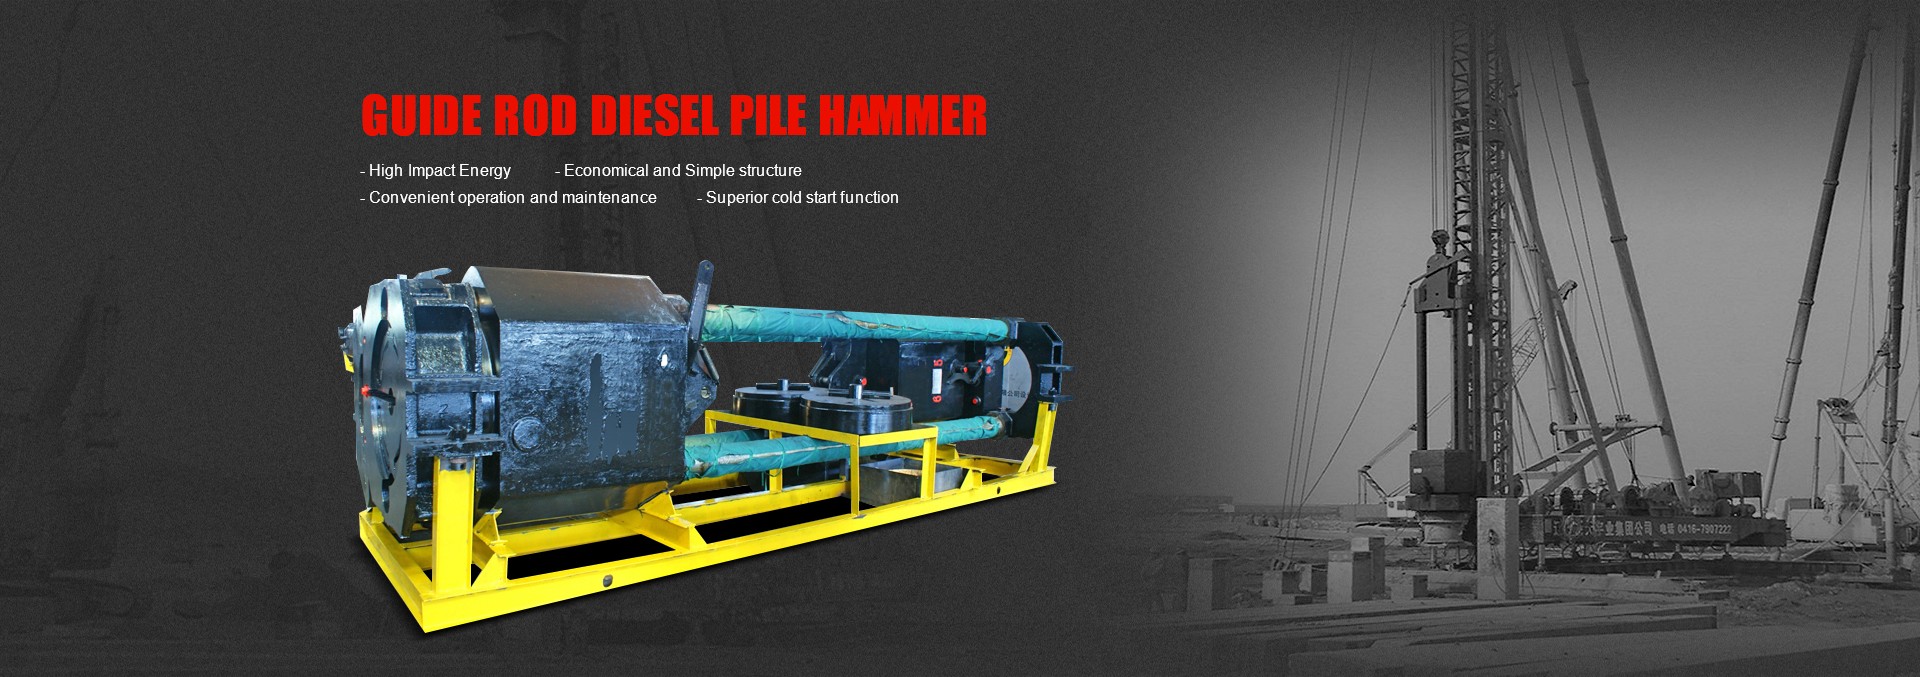 Panduan Rod Diesel Pile Hammer